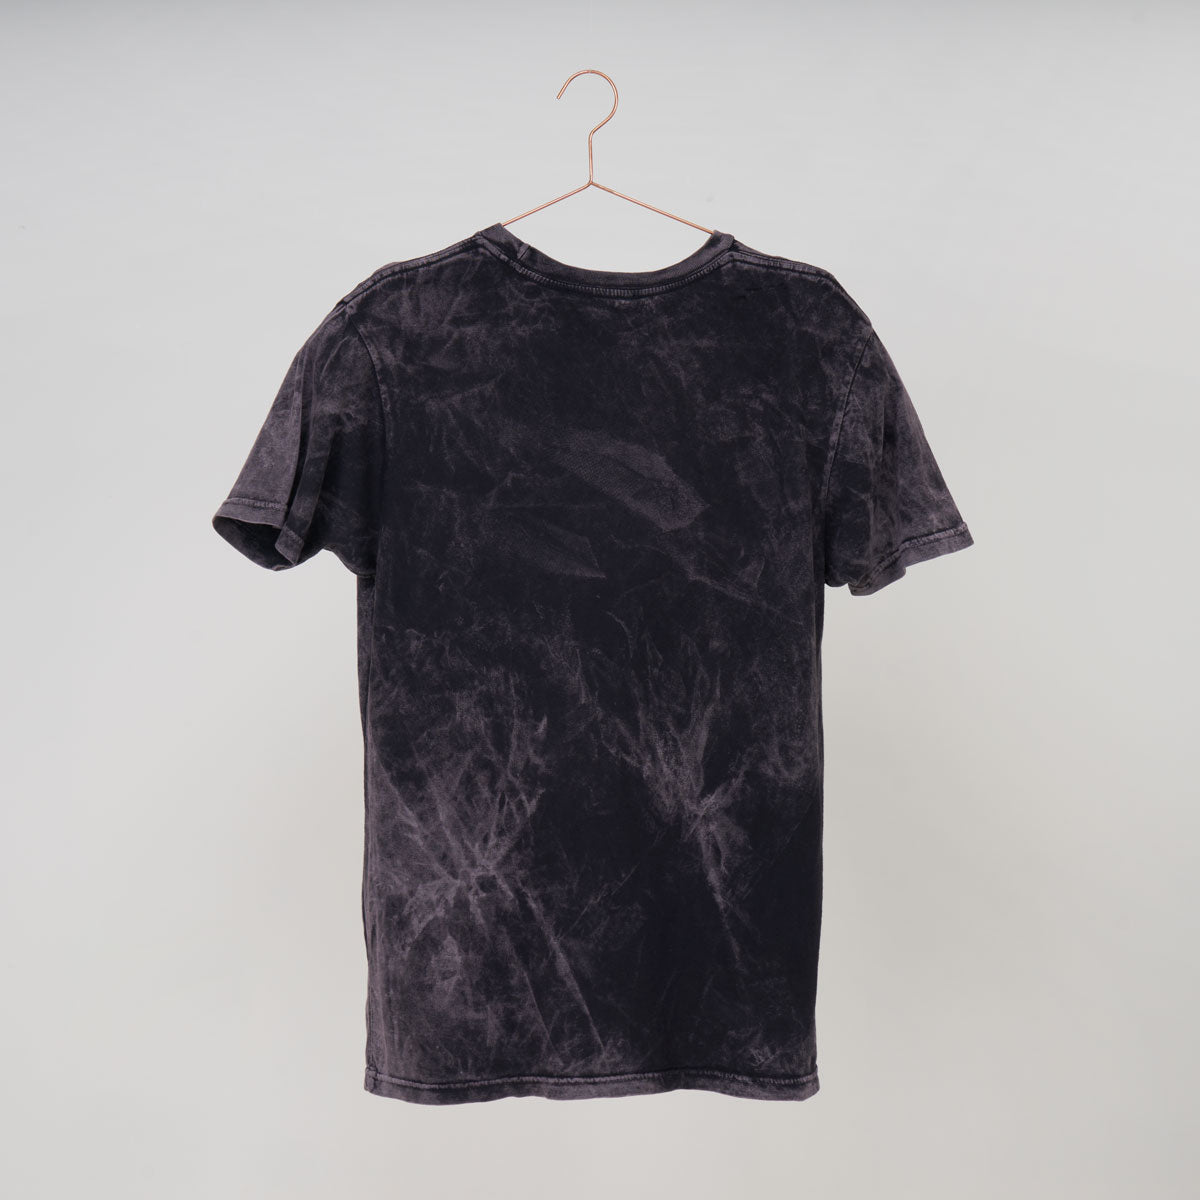 Dream Sleep T-Shirt - Black Cloud